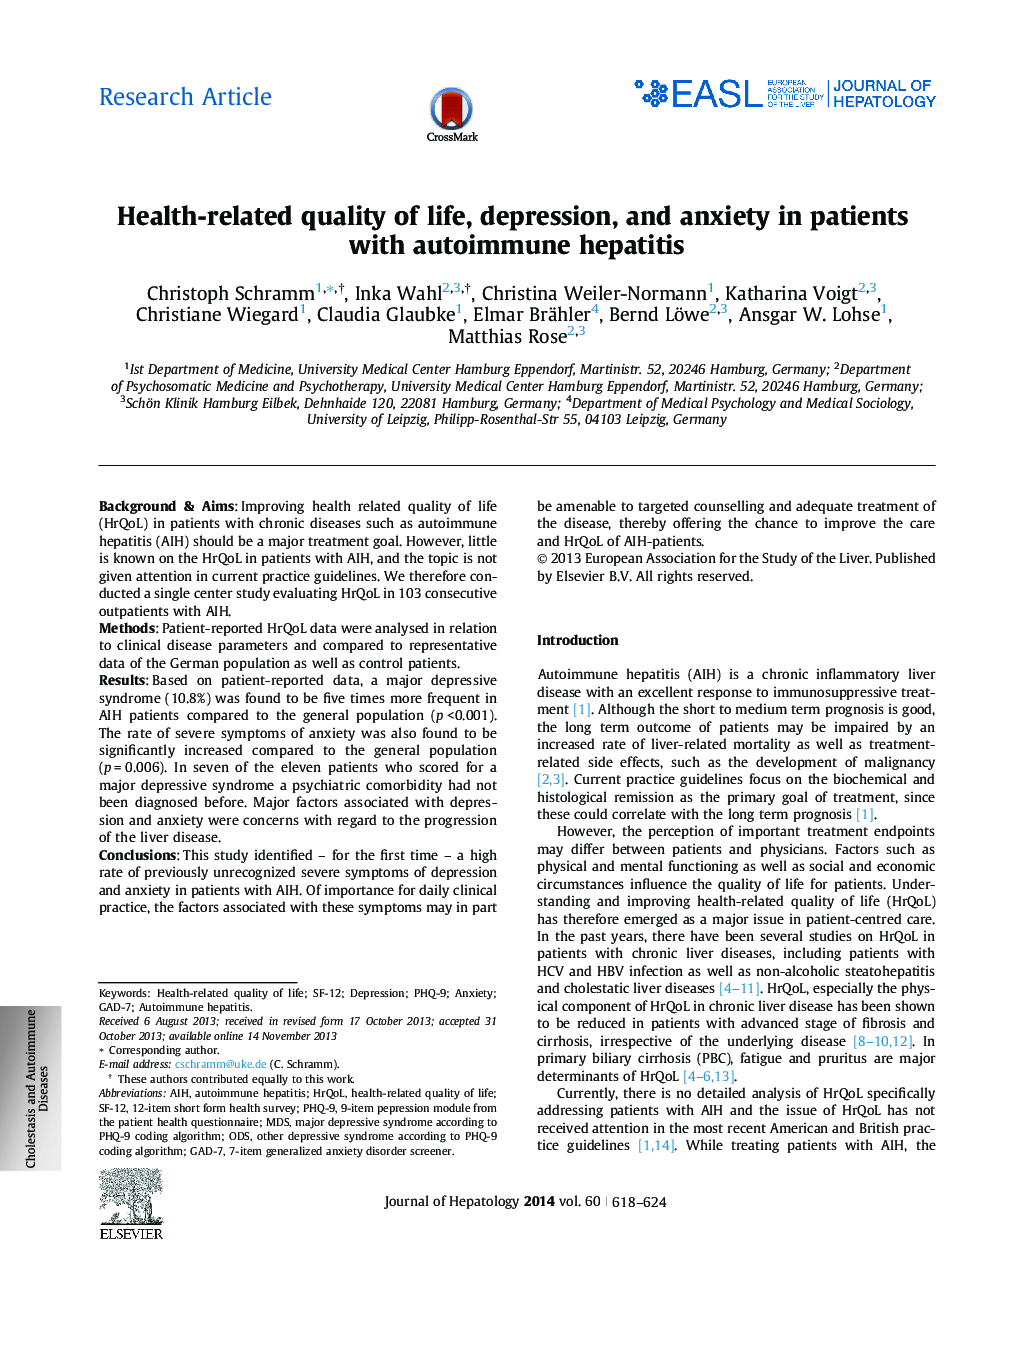 کیفیت زندگی زندگی، افسردگی و اضطراب در بیماران مبتلا به هپاتیت اتوایمیون مربوط به مقاله مرتبط با سلامت است 